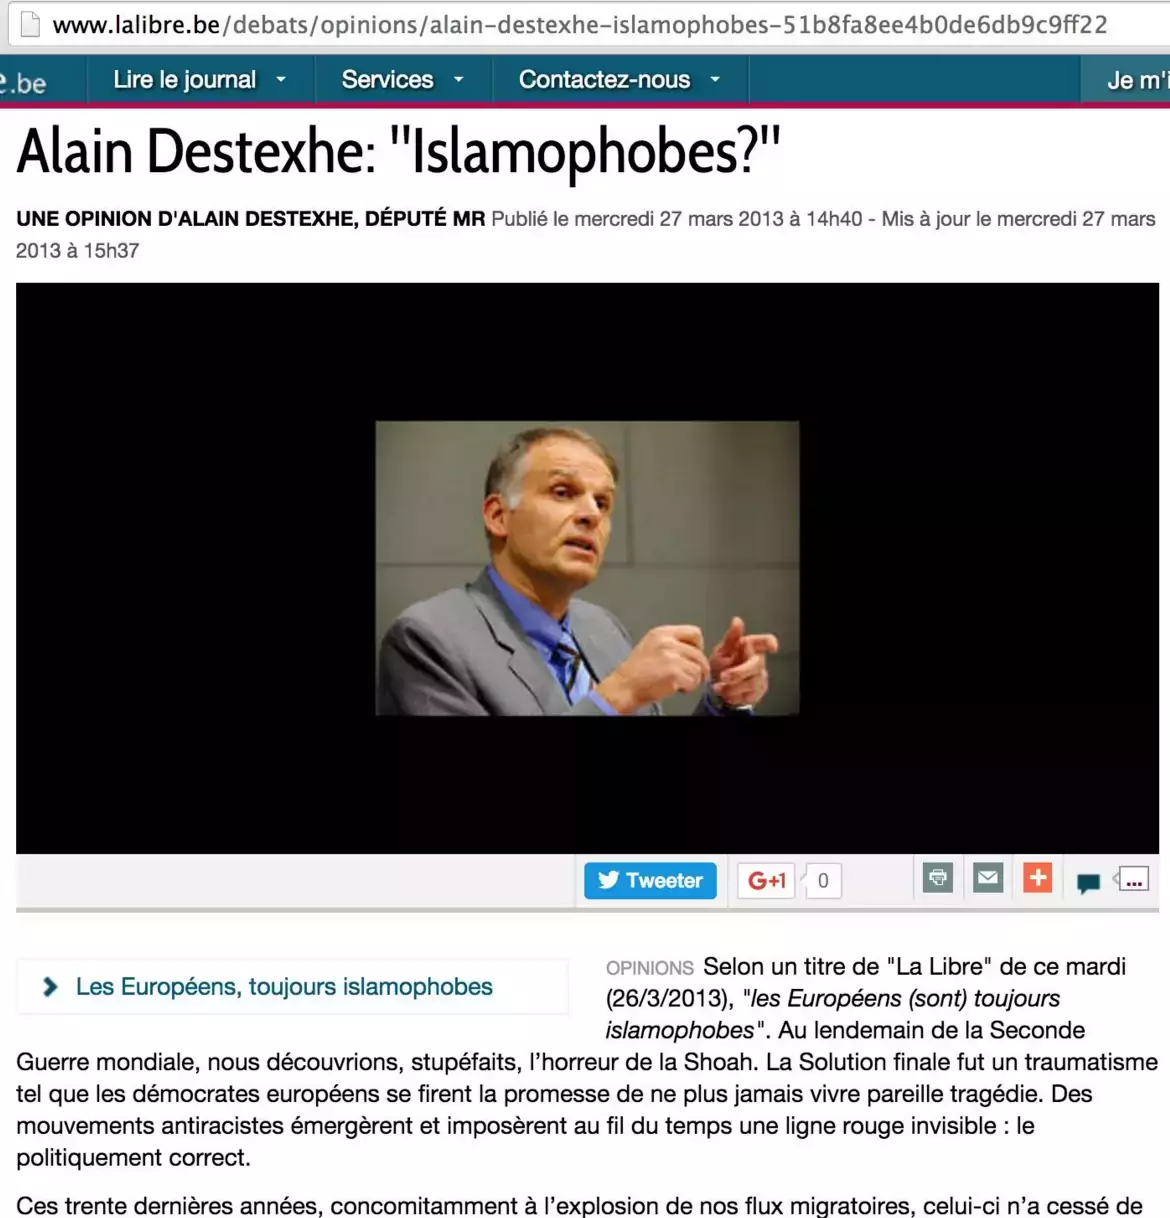 Carte blanche du député libéral Alain Desthexe niant l'existence du racisme, fustigeant "l'antiracisme" et développant une rhétorique complotiste.